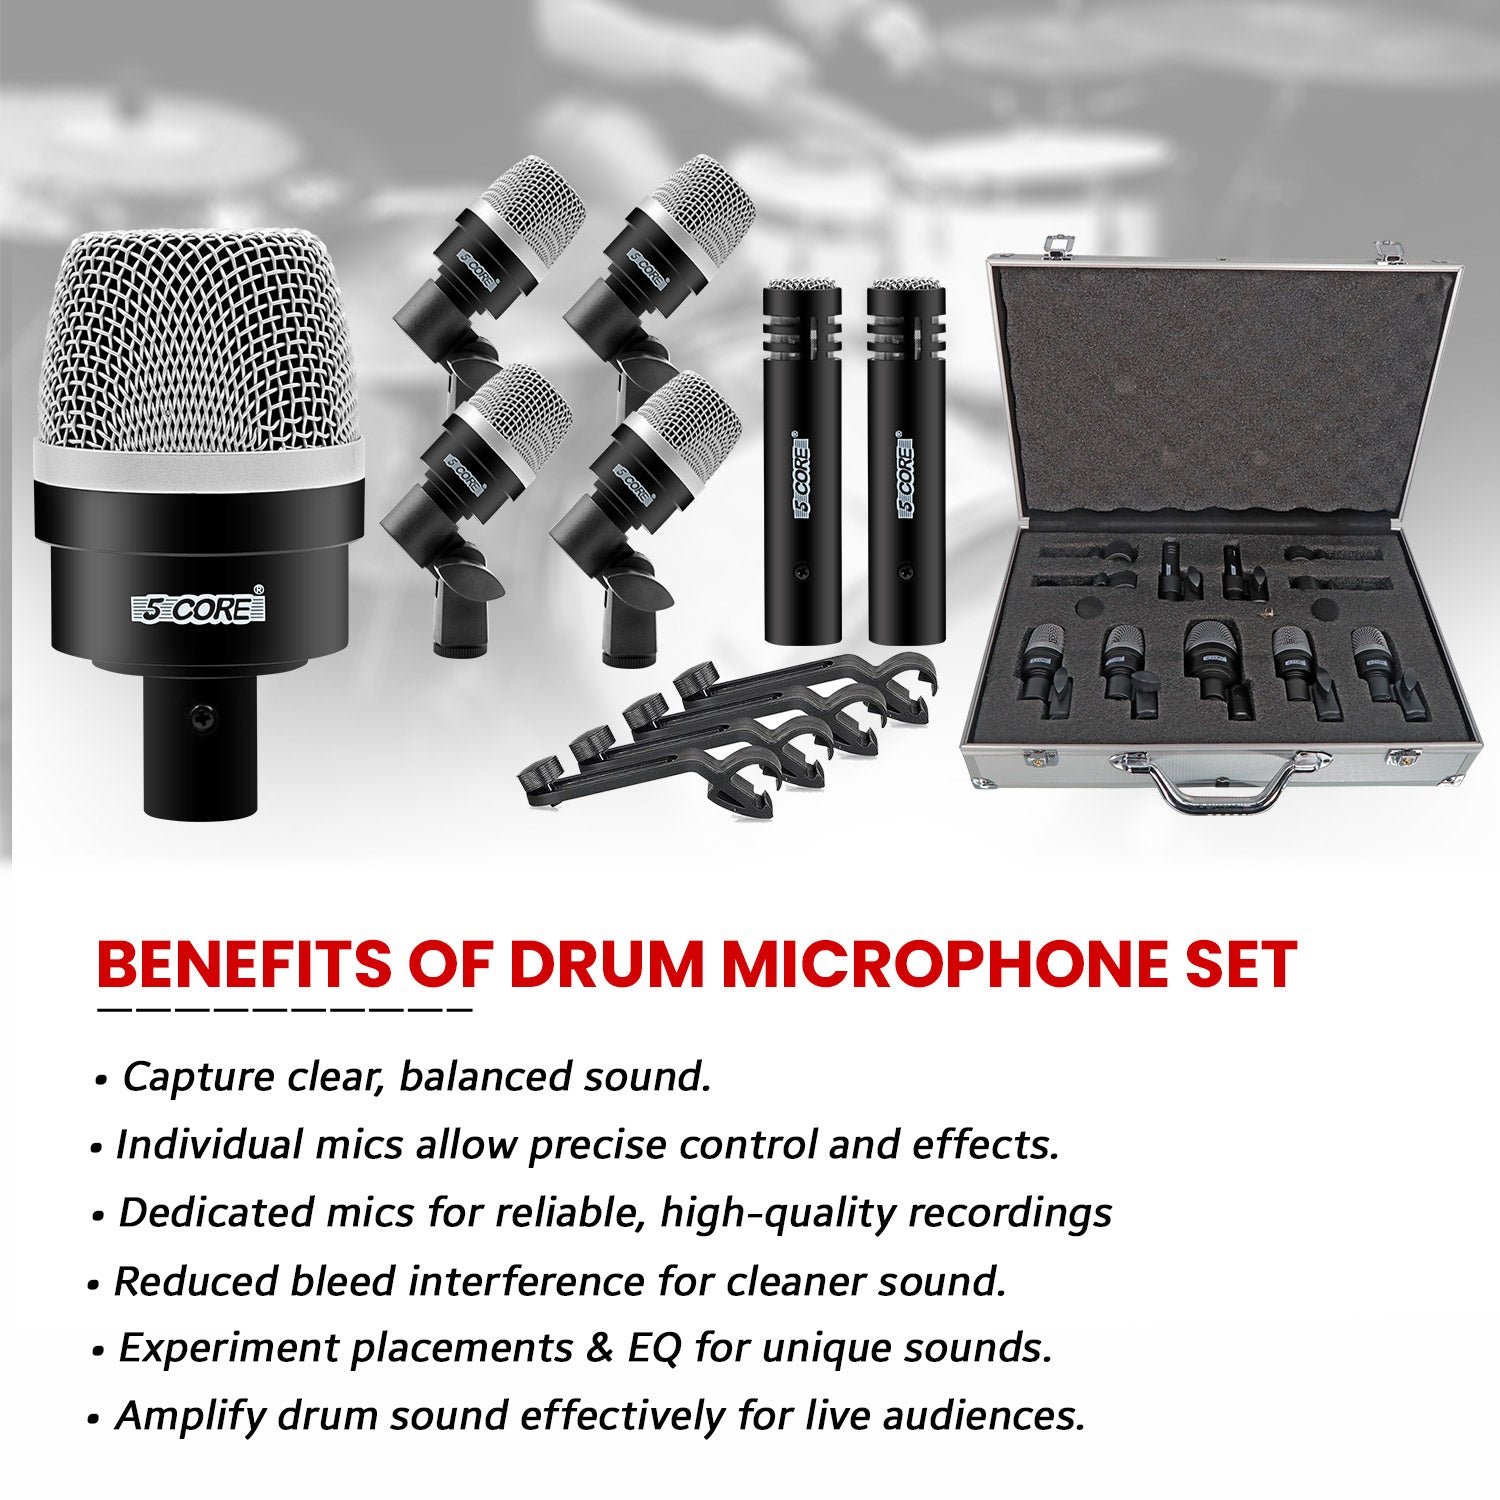 Professional Drum Setup: 5 Core 7-Piece XLR Microphone Set